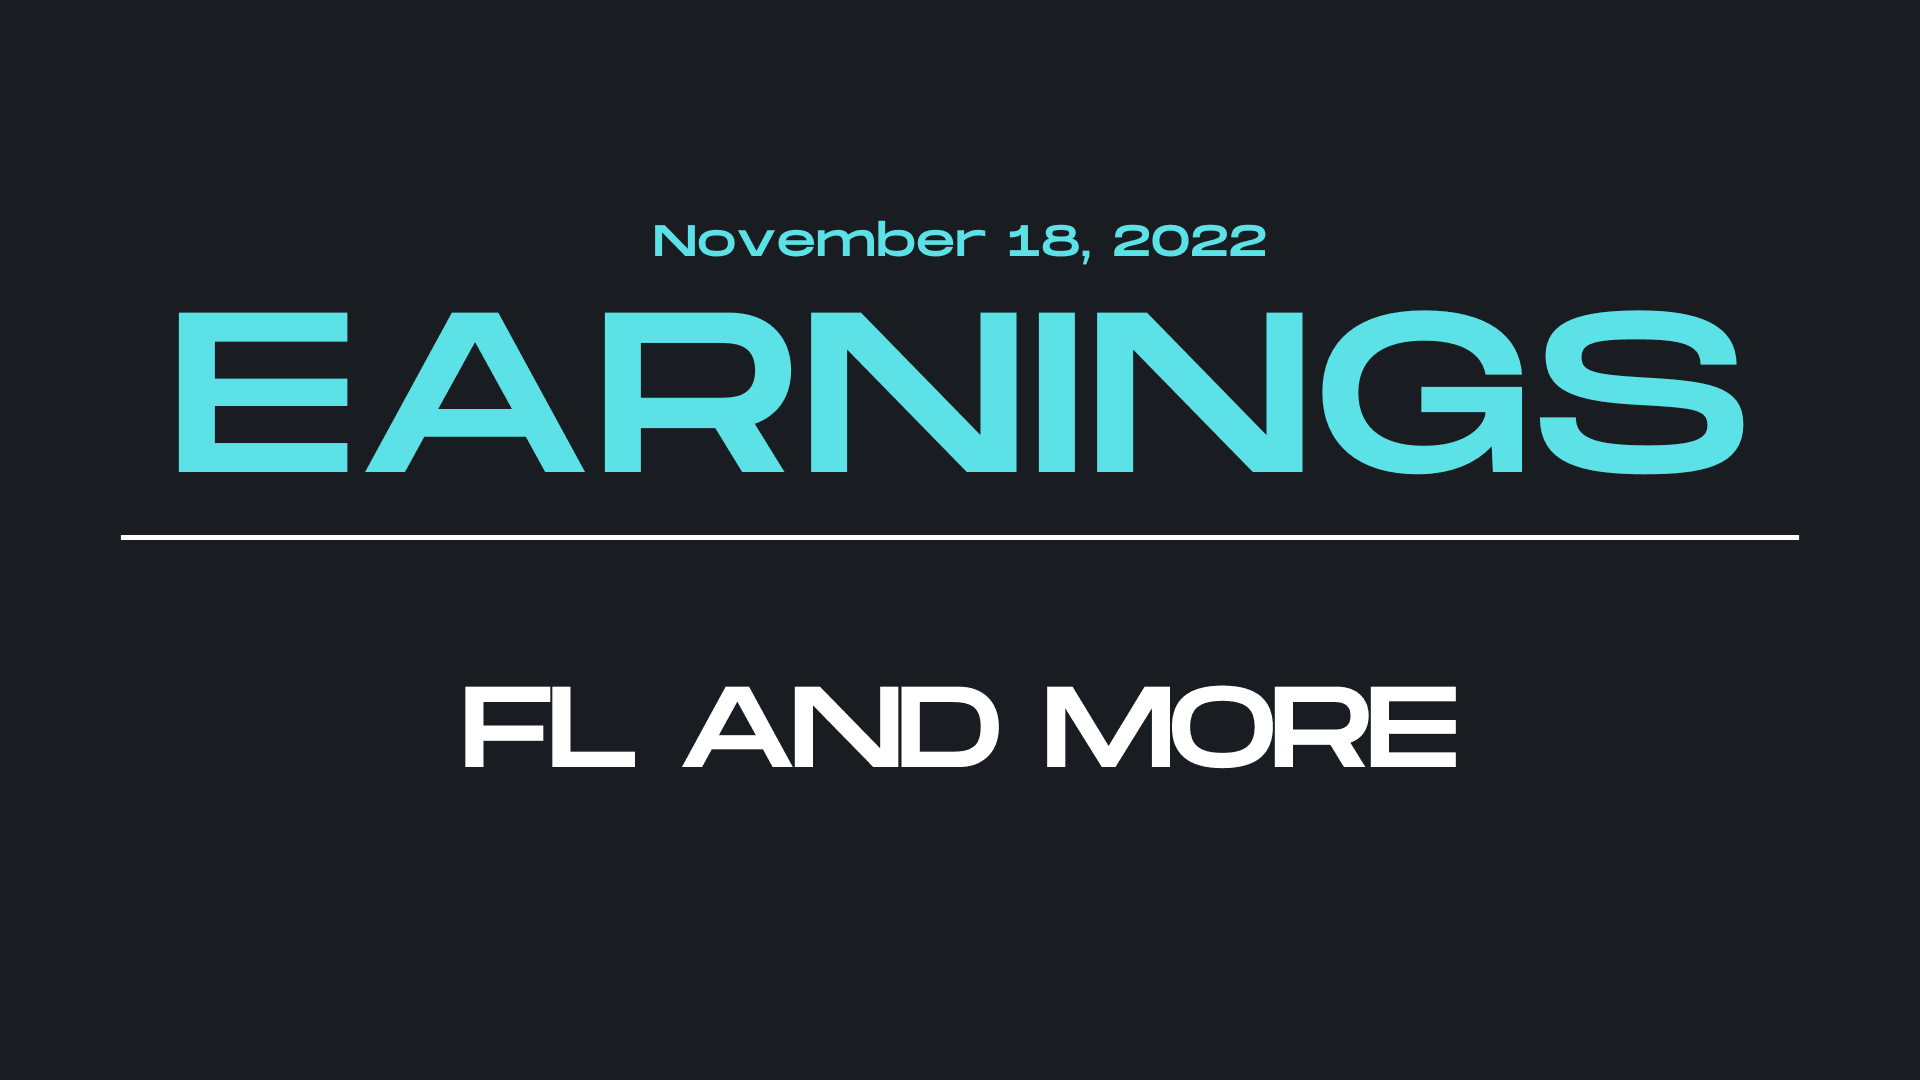 November 18, 2022 earnings